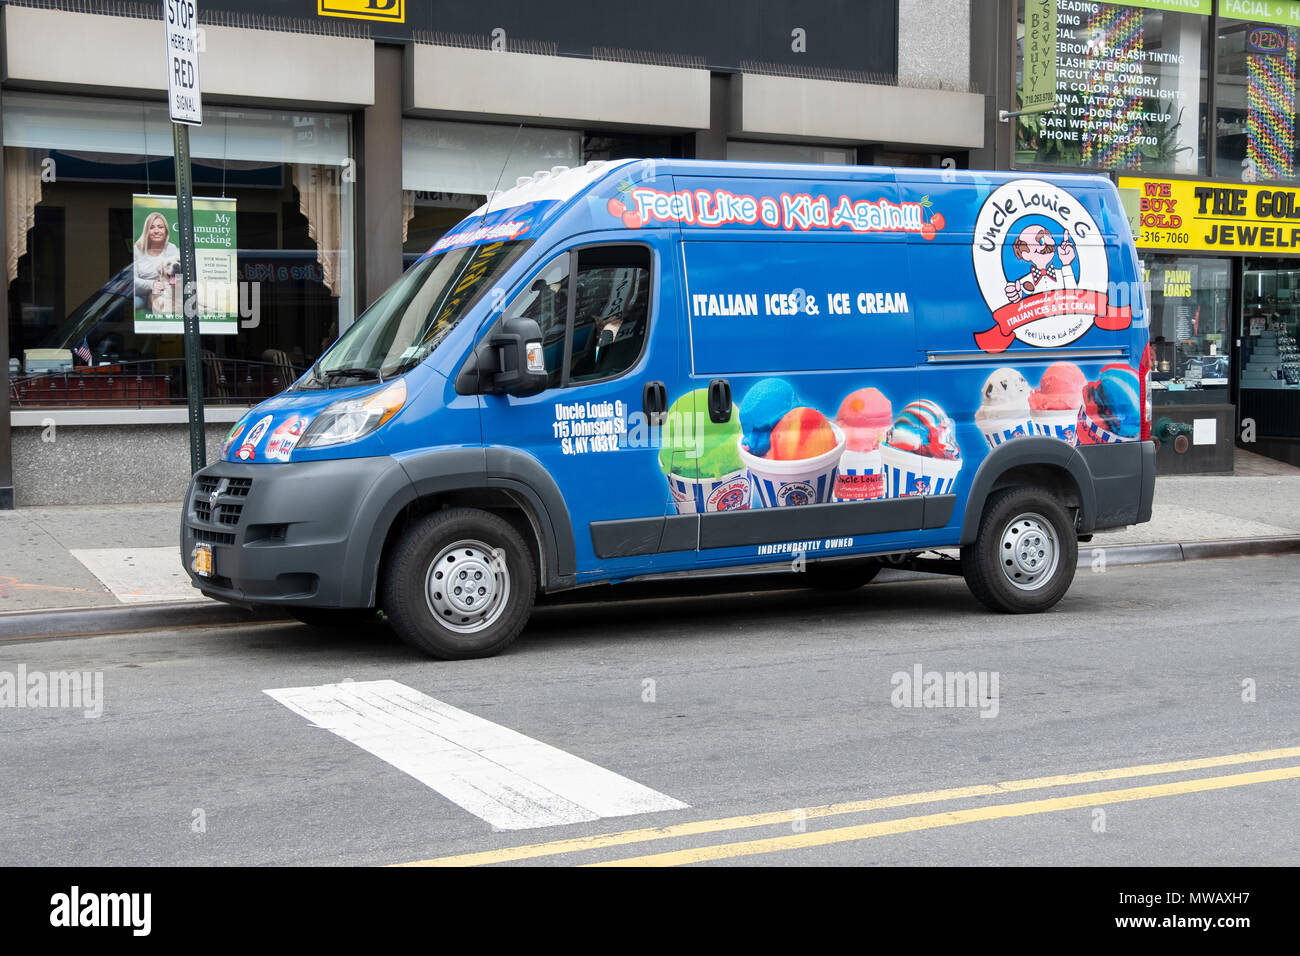 Die Uncle Louie G Italienische ices & ice cream Truck auf Austin Street in Forest Hills, Queens, New York geparkt. Stockfoto